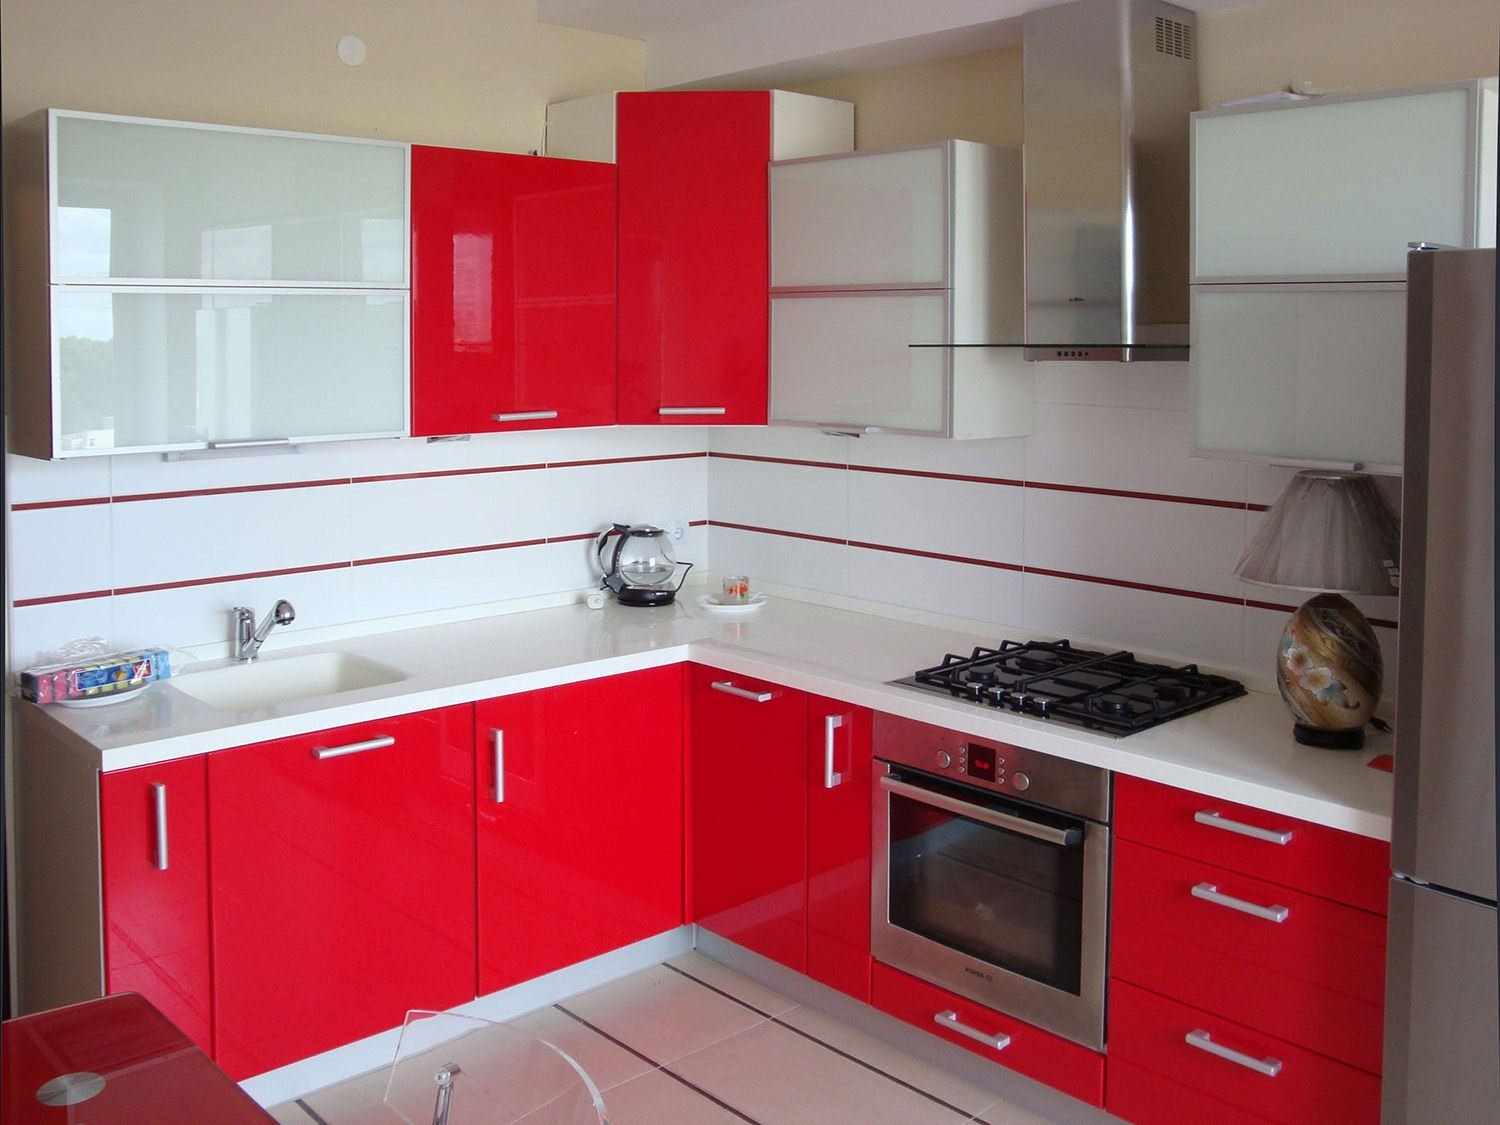 một ví dụ về thiết kế nhà bếp màu đỏ nhạt